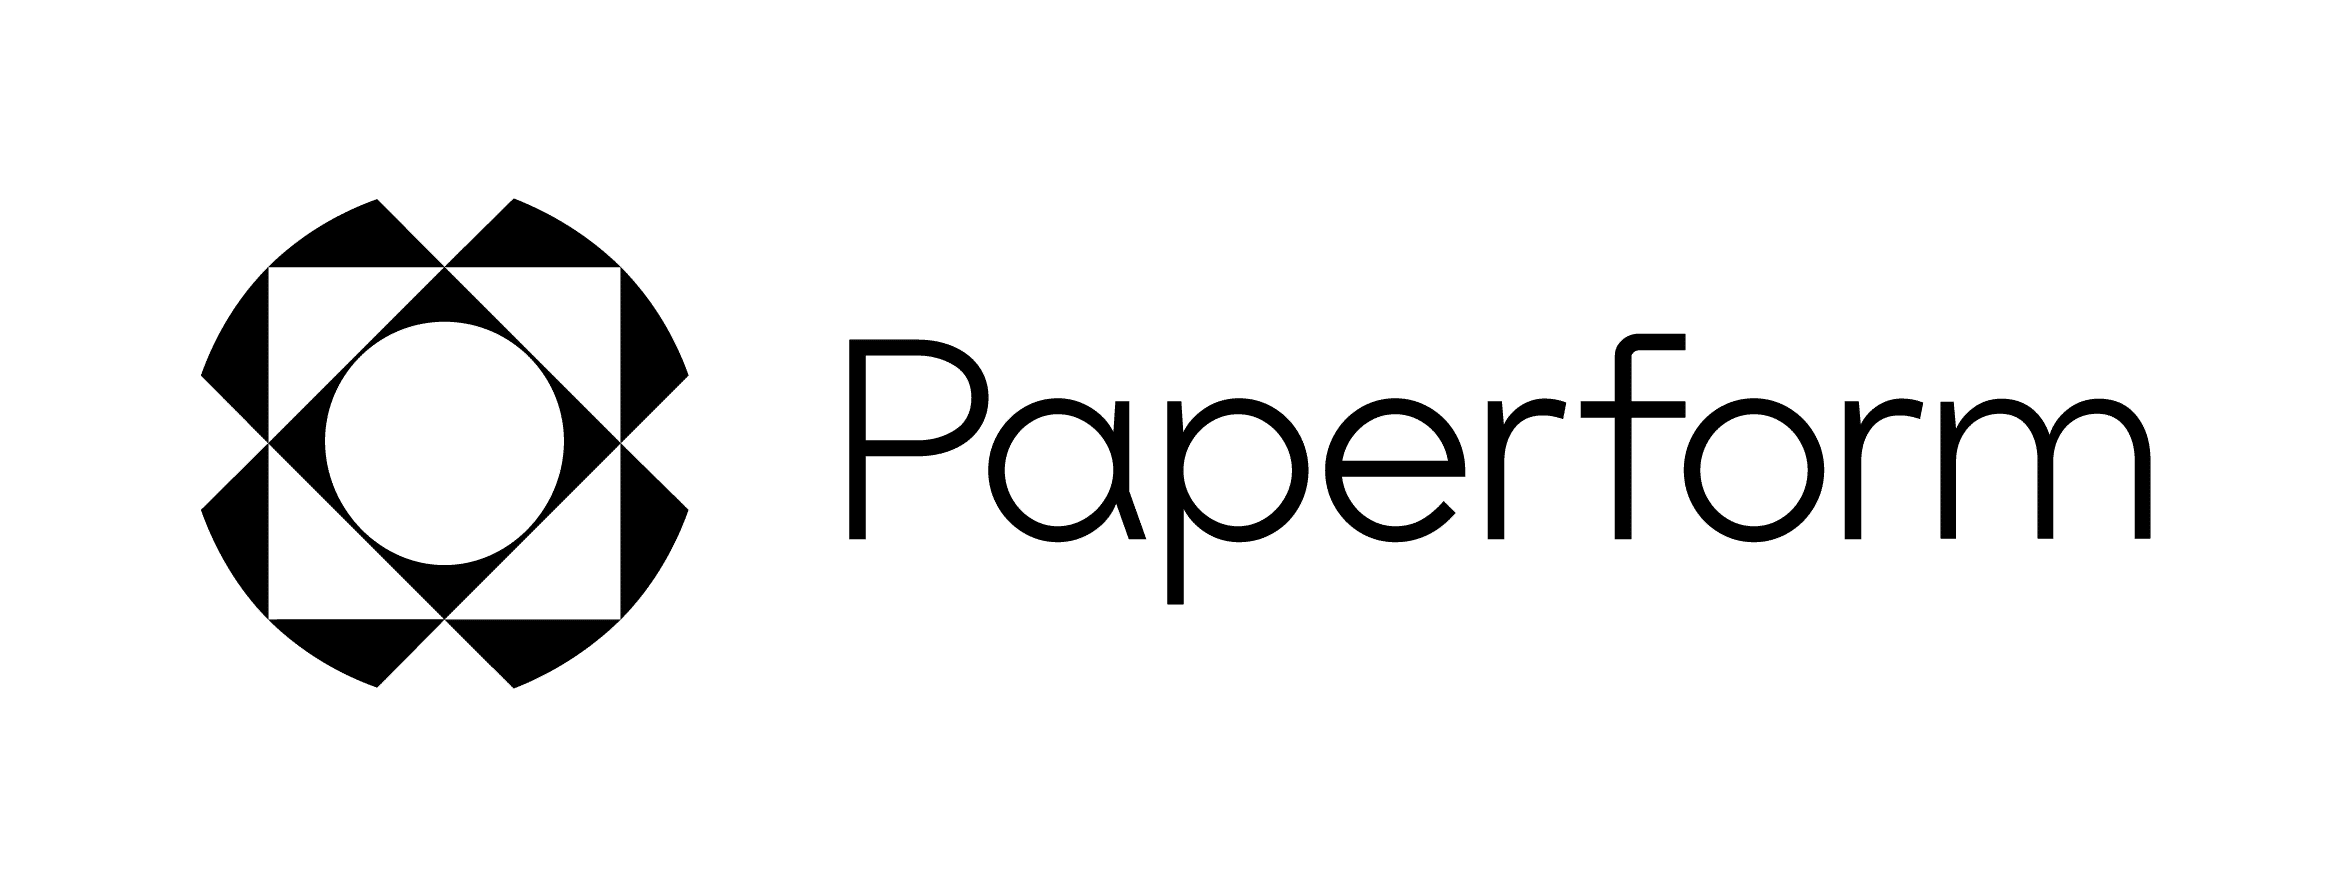 Paperform - Online Form Builder Software